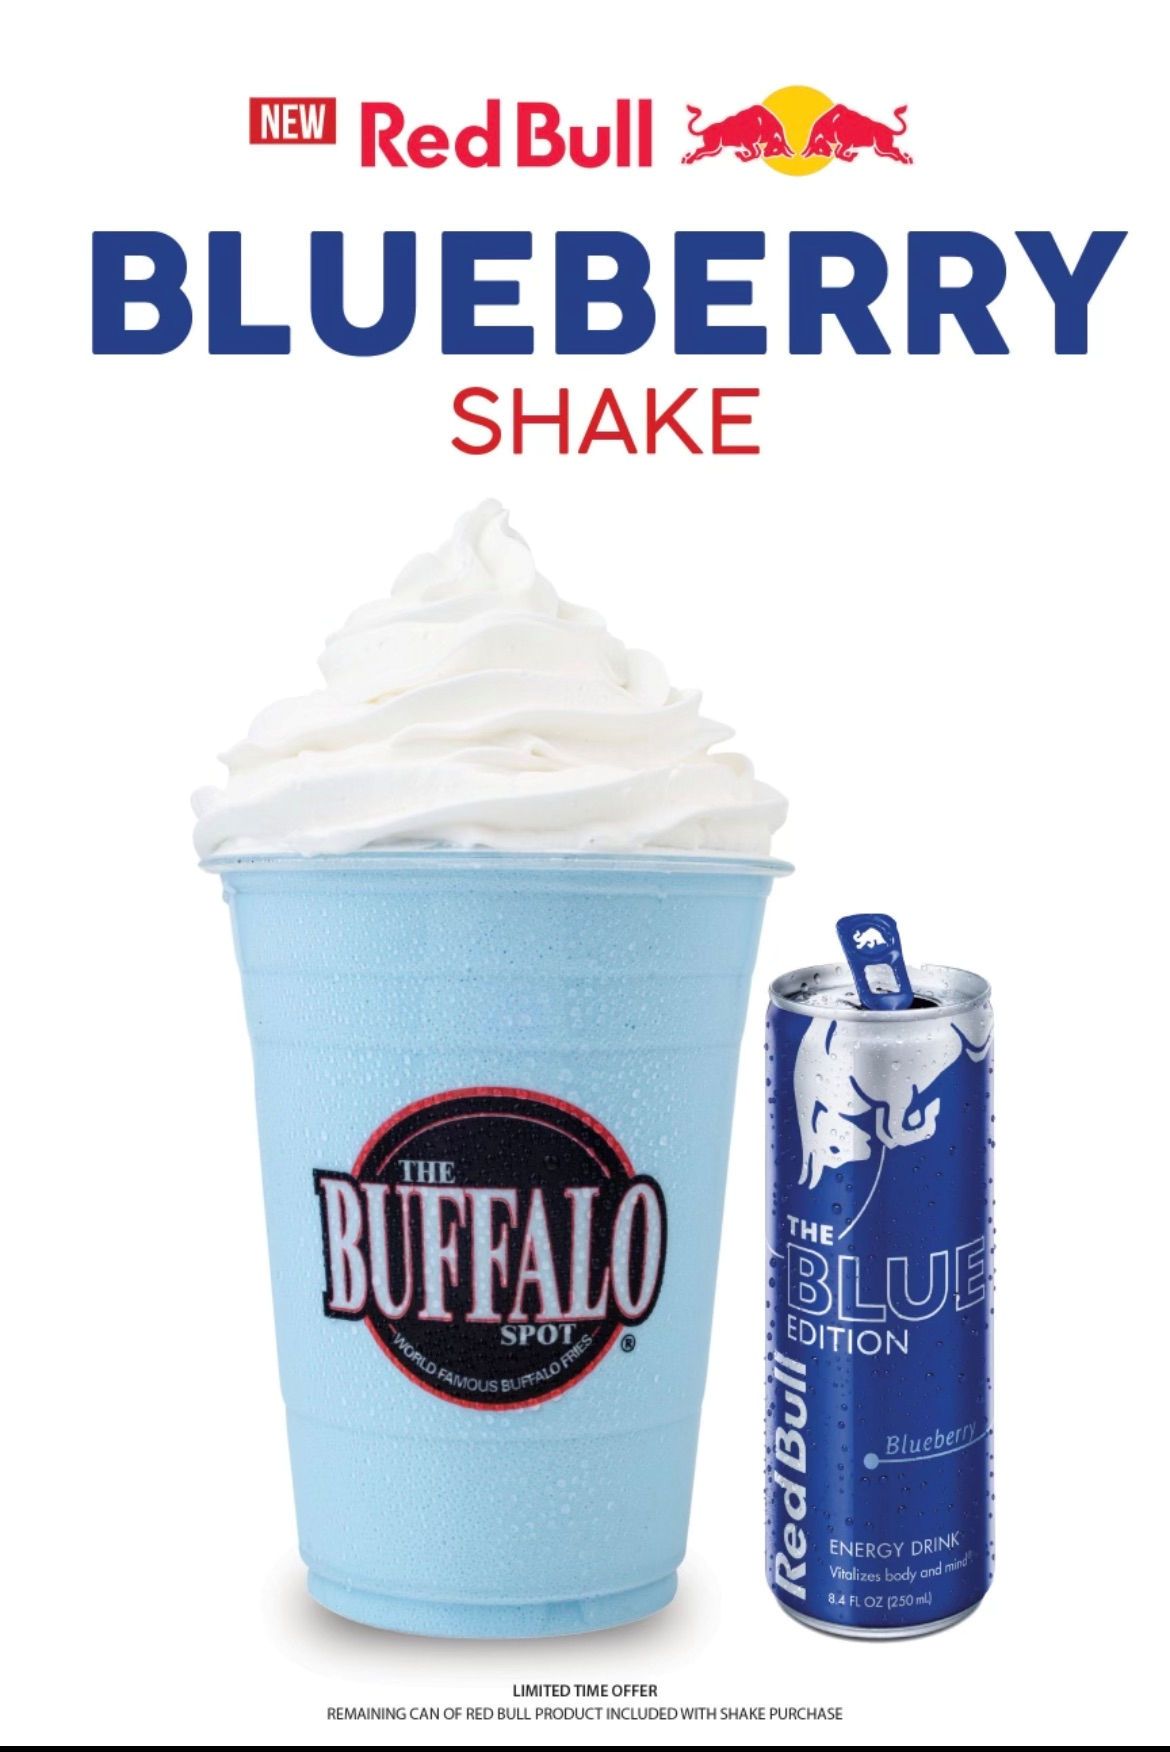 Encinal Brands lance un nouveau Blueberry Red Bull Shake dans tous les emplacements Buffalo Spot